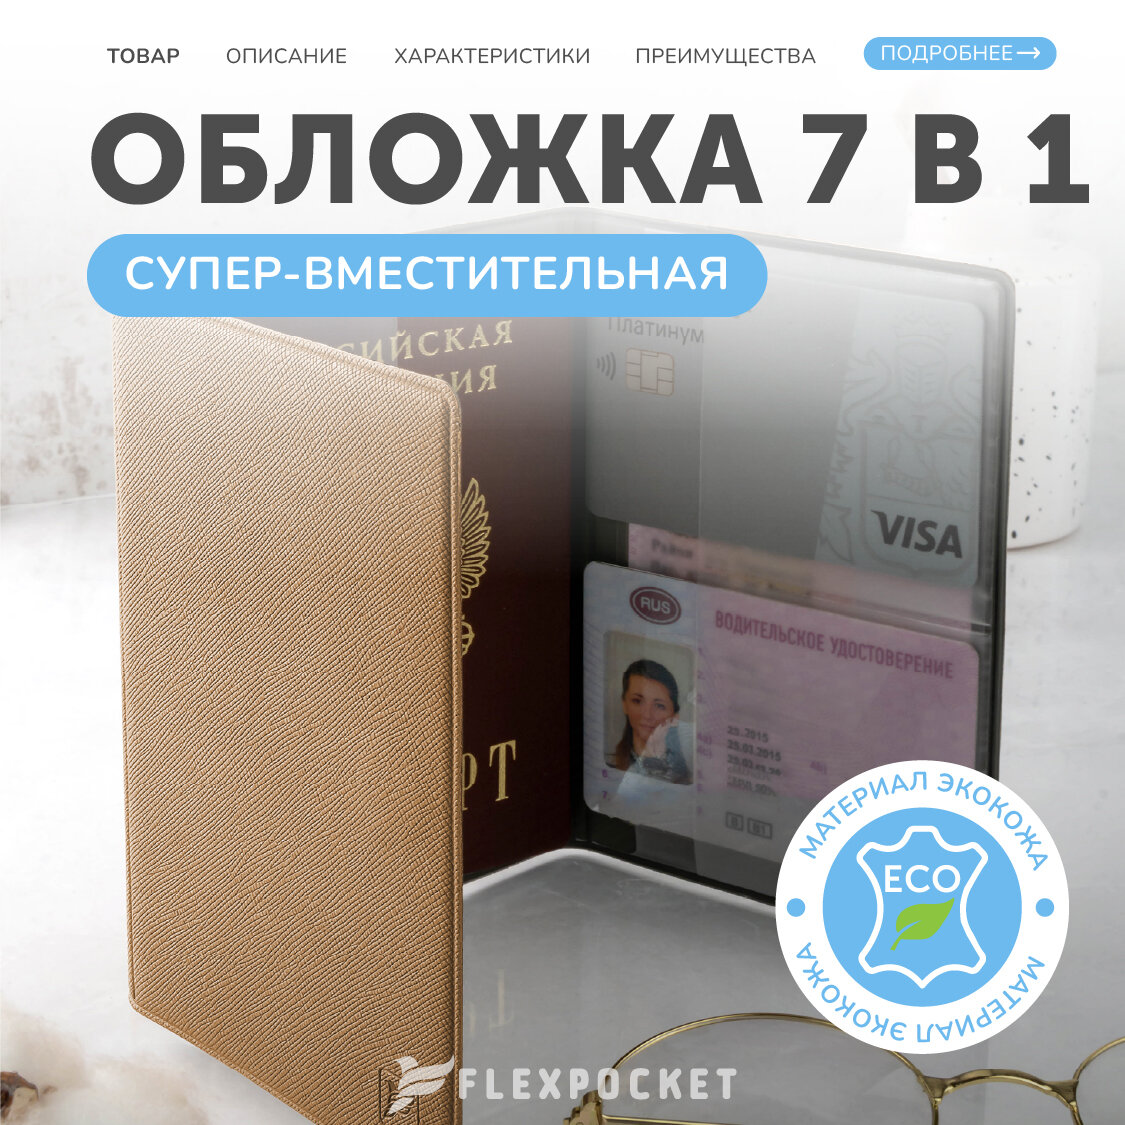 Документница для личных документов Flexpocket обложка на паспорт, для автодокументов, банковских карт